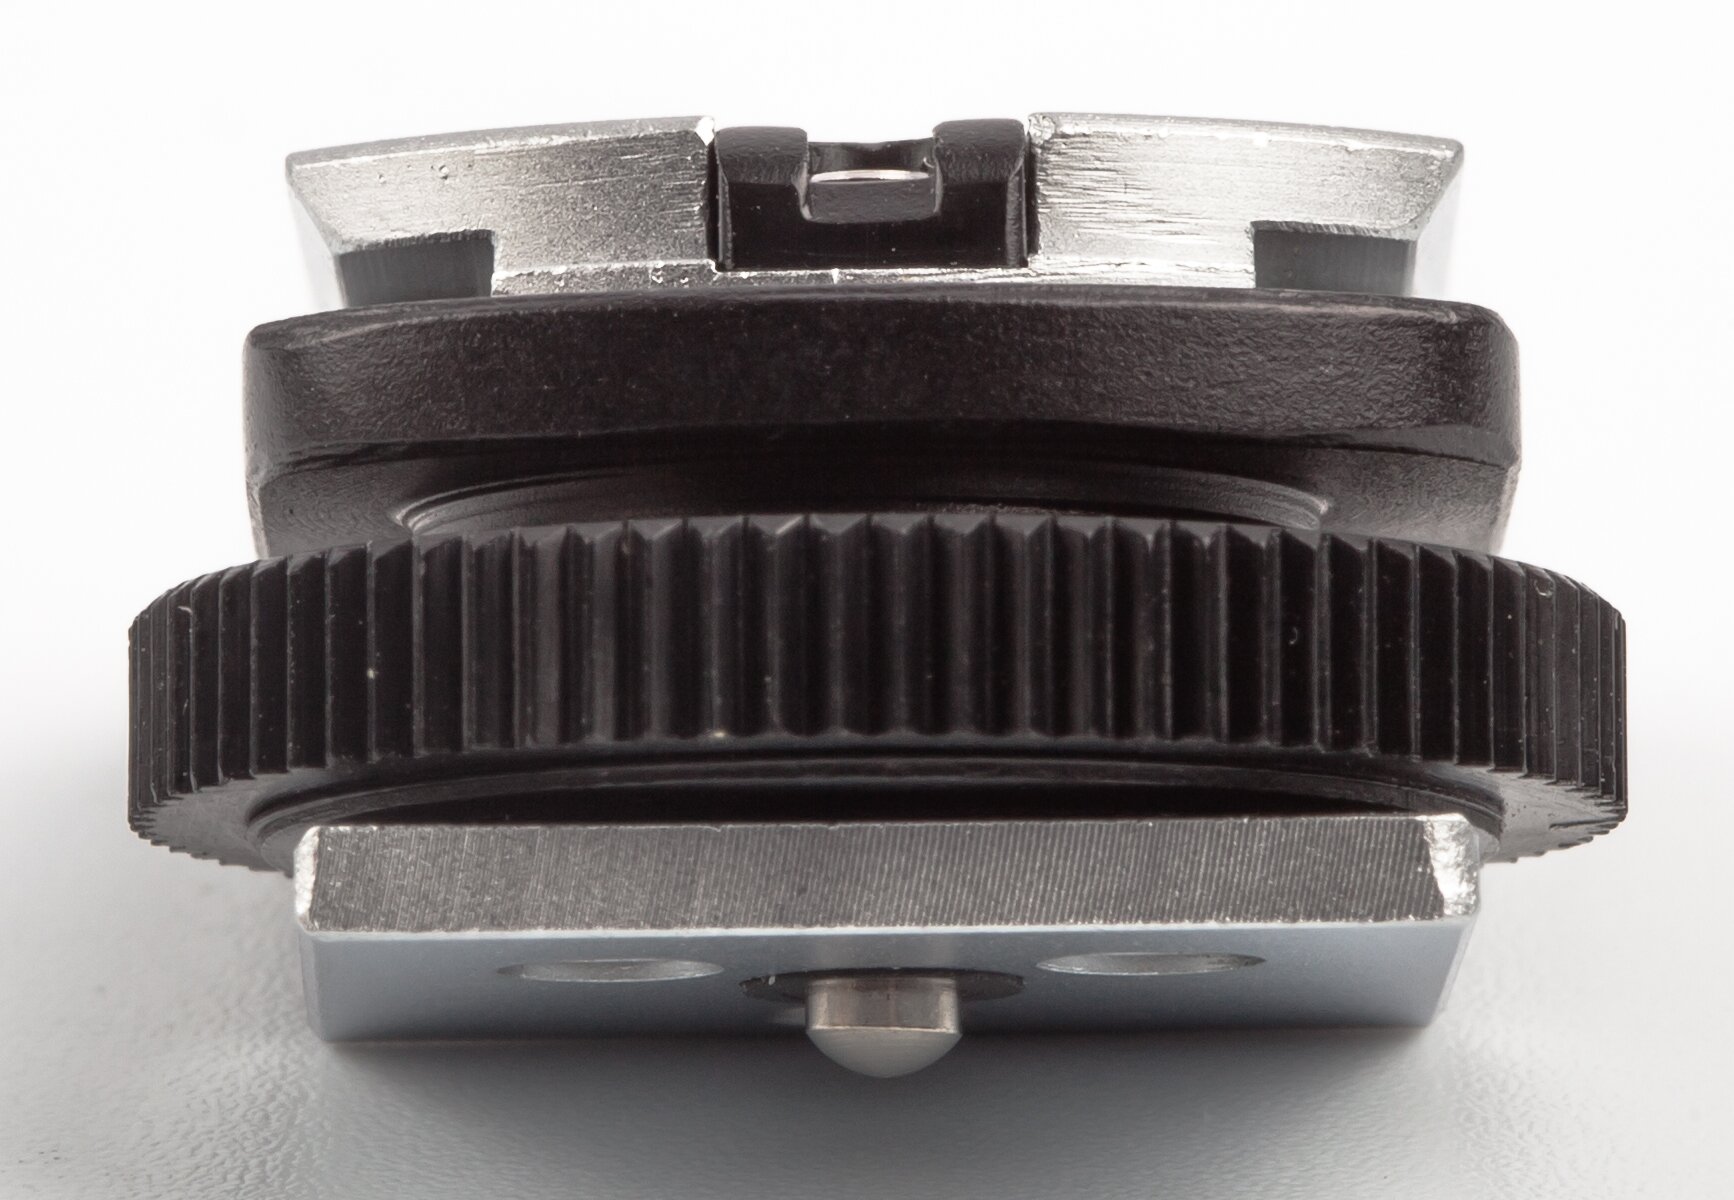 Nikon AS-2 flashcoupler, F2-flashes to centreconta